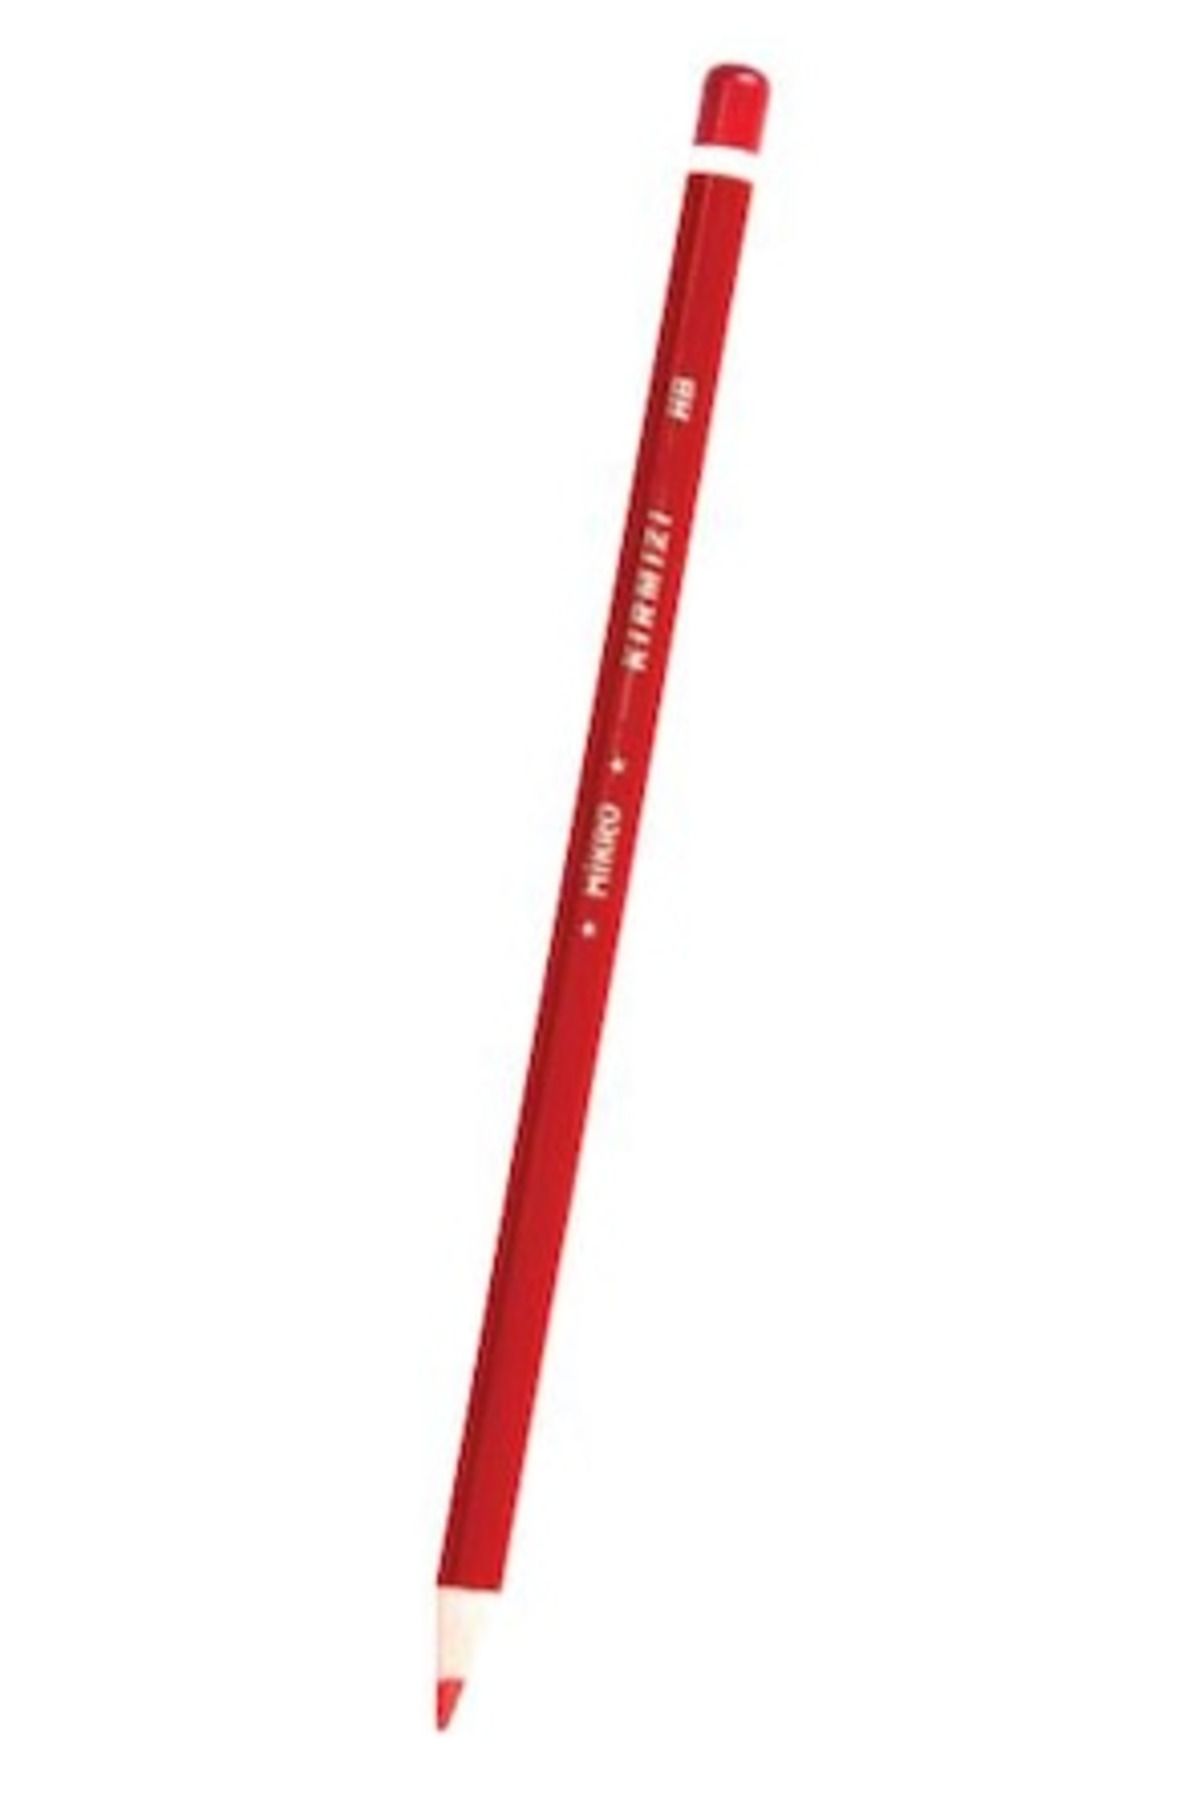 Mikro Kopya Kalemi Kırmızı Kr-1105